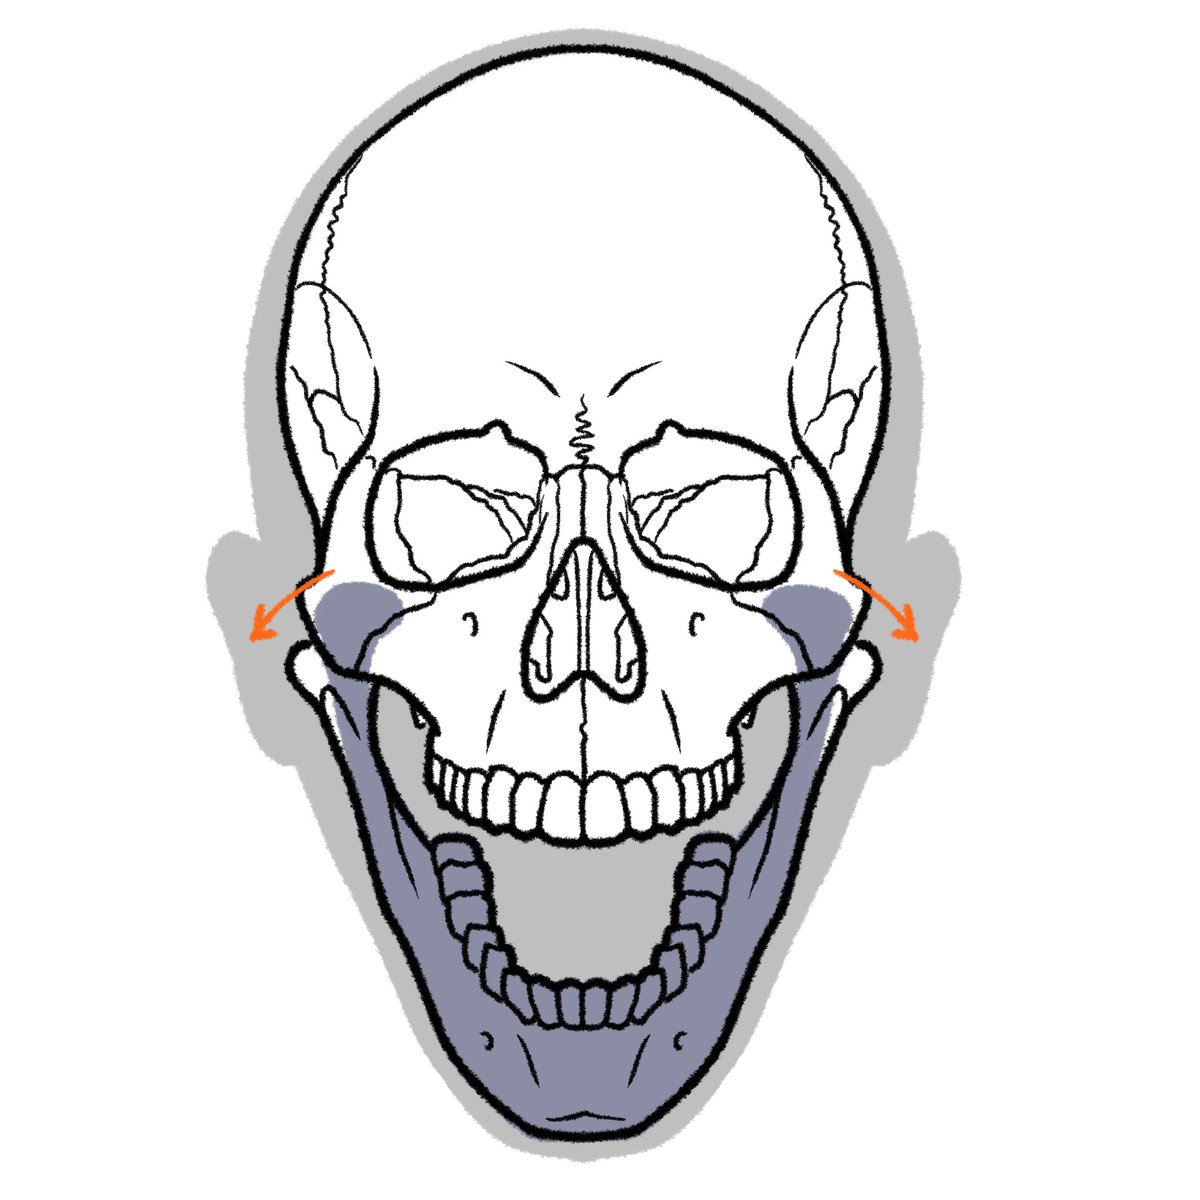 骨はけっこう曲がります。 確認しやすい例では、大きく口を開けると、下顎の骨が左右に開いて、顔の輪郭を変えます。